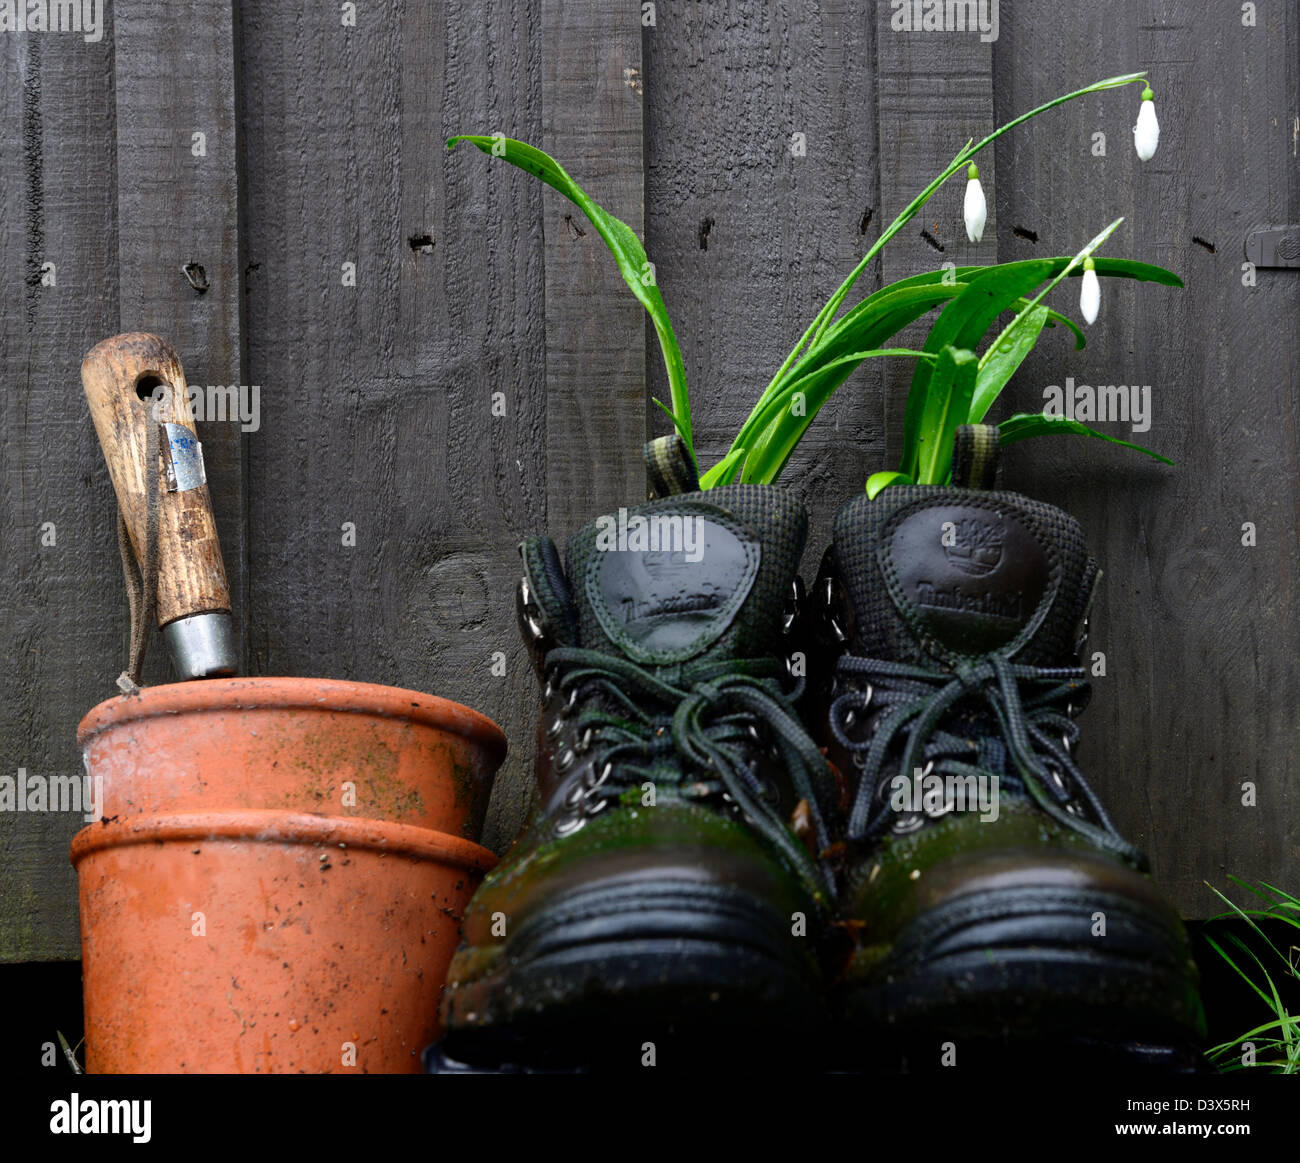 Galanthus nivalis bucaneve crescente crescere nel vecchio paio scarpe da trekking insolito vaso contenitore di riciclaggio riciclare recuperare il giardinaggio Foto Stock